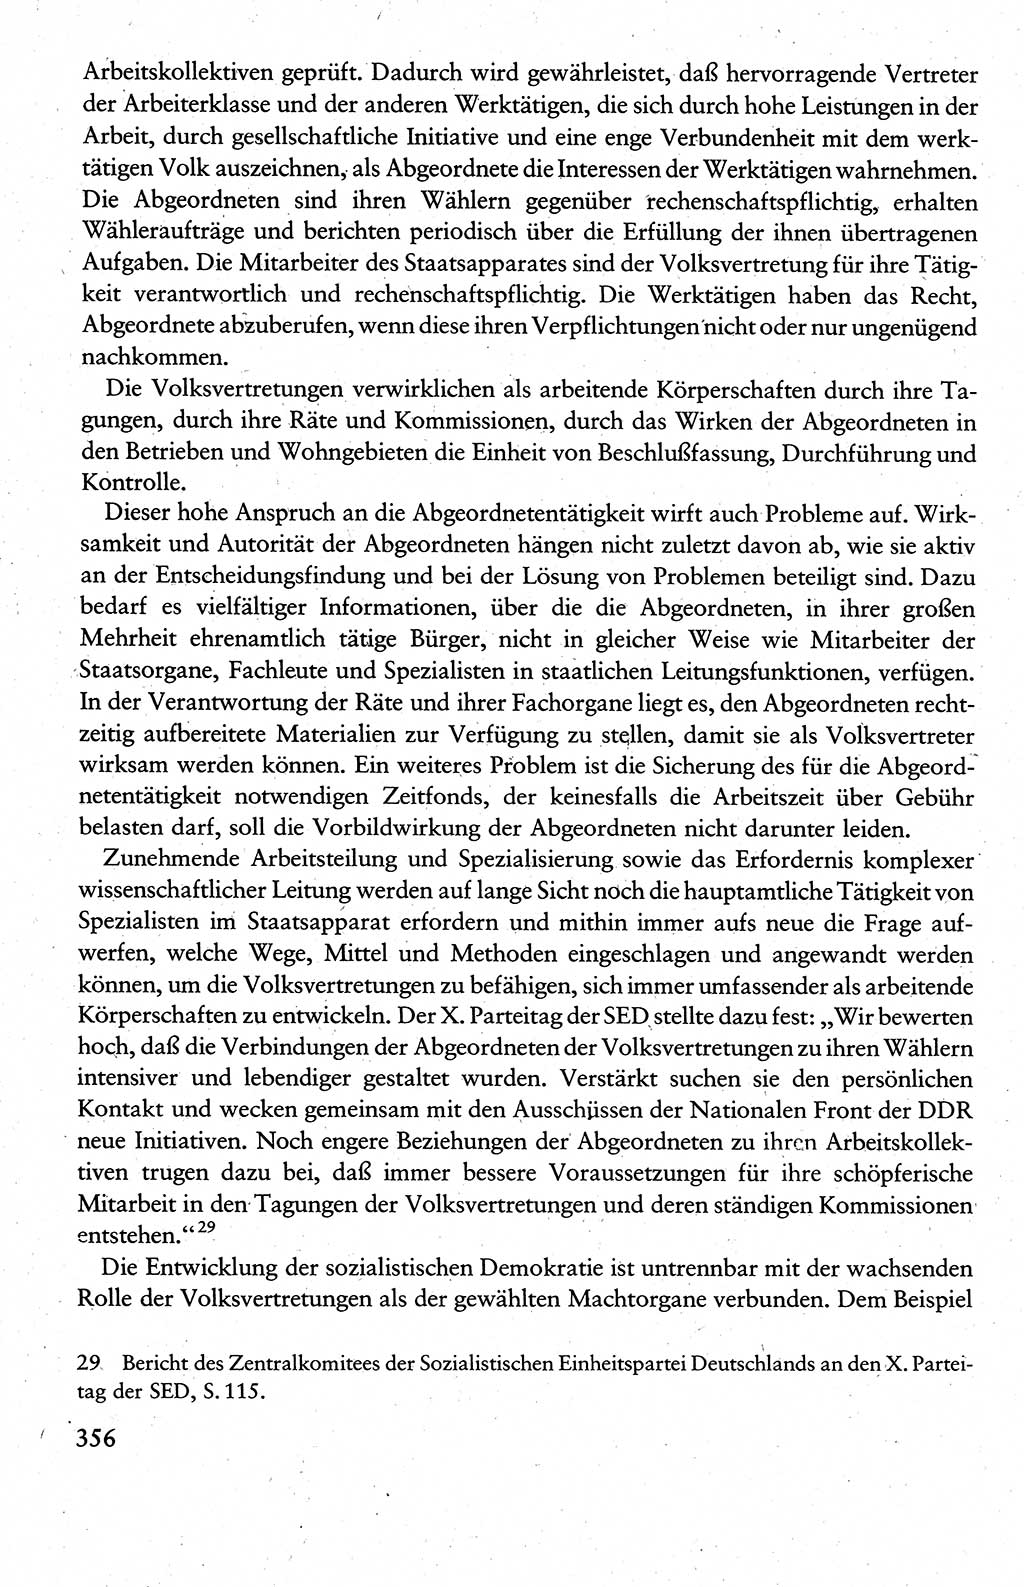 Wissenschaftlicher Kommunismus [Deutsche Demokratische Republik (DDR)], Lehrbuch für das marxistisch-leninistische Grundlagenstudium 1983, Seite 356 (Wiss. Komm. DDR Lb. 1983, S. 356)